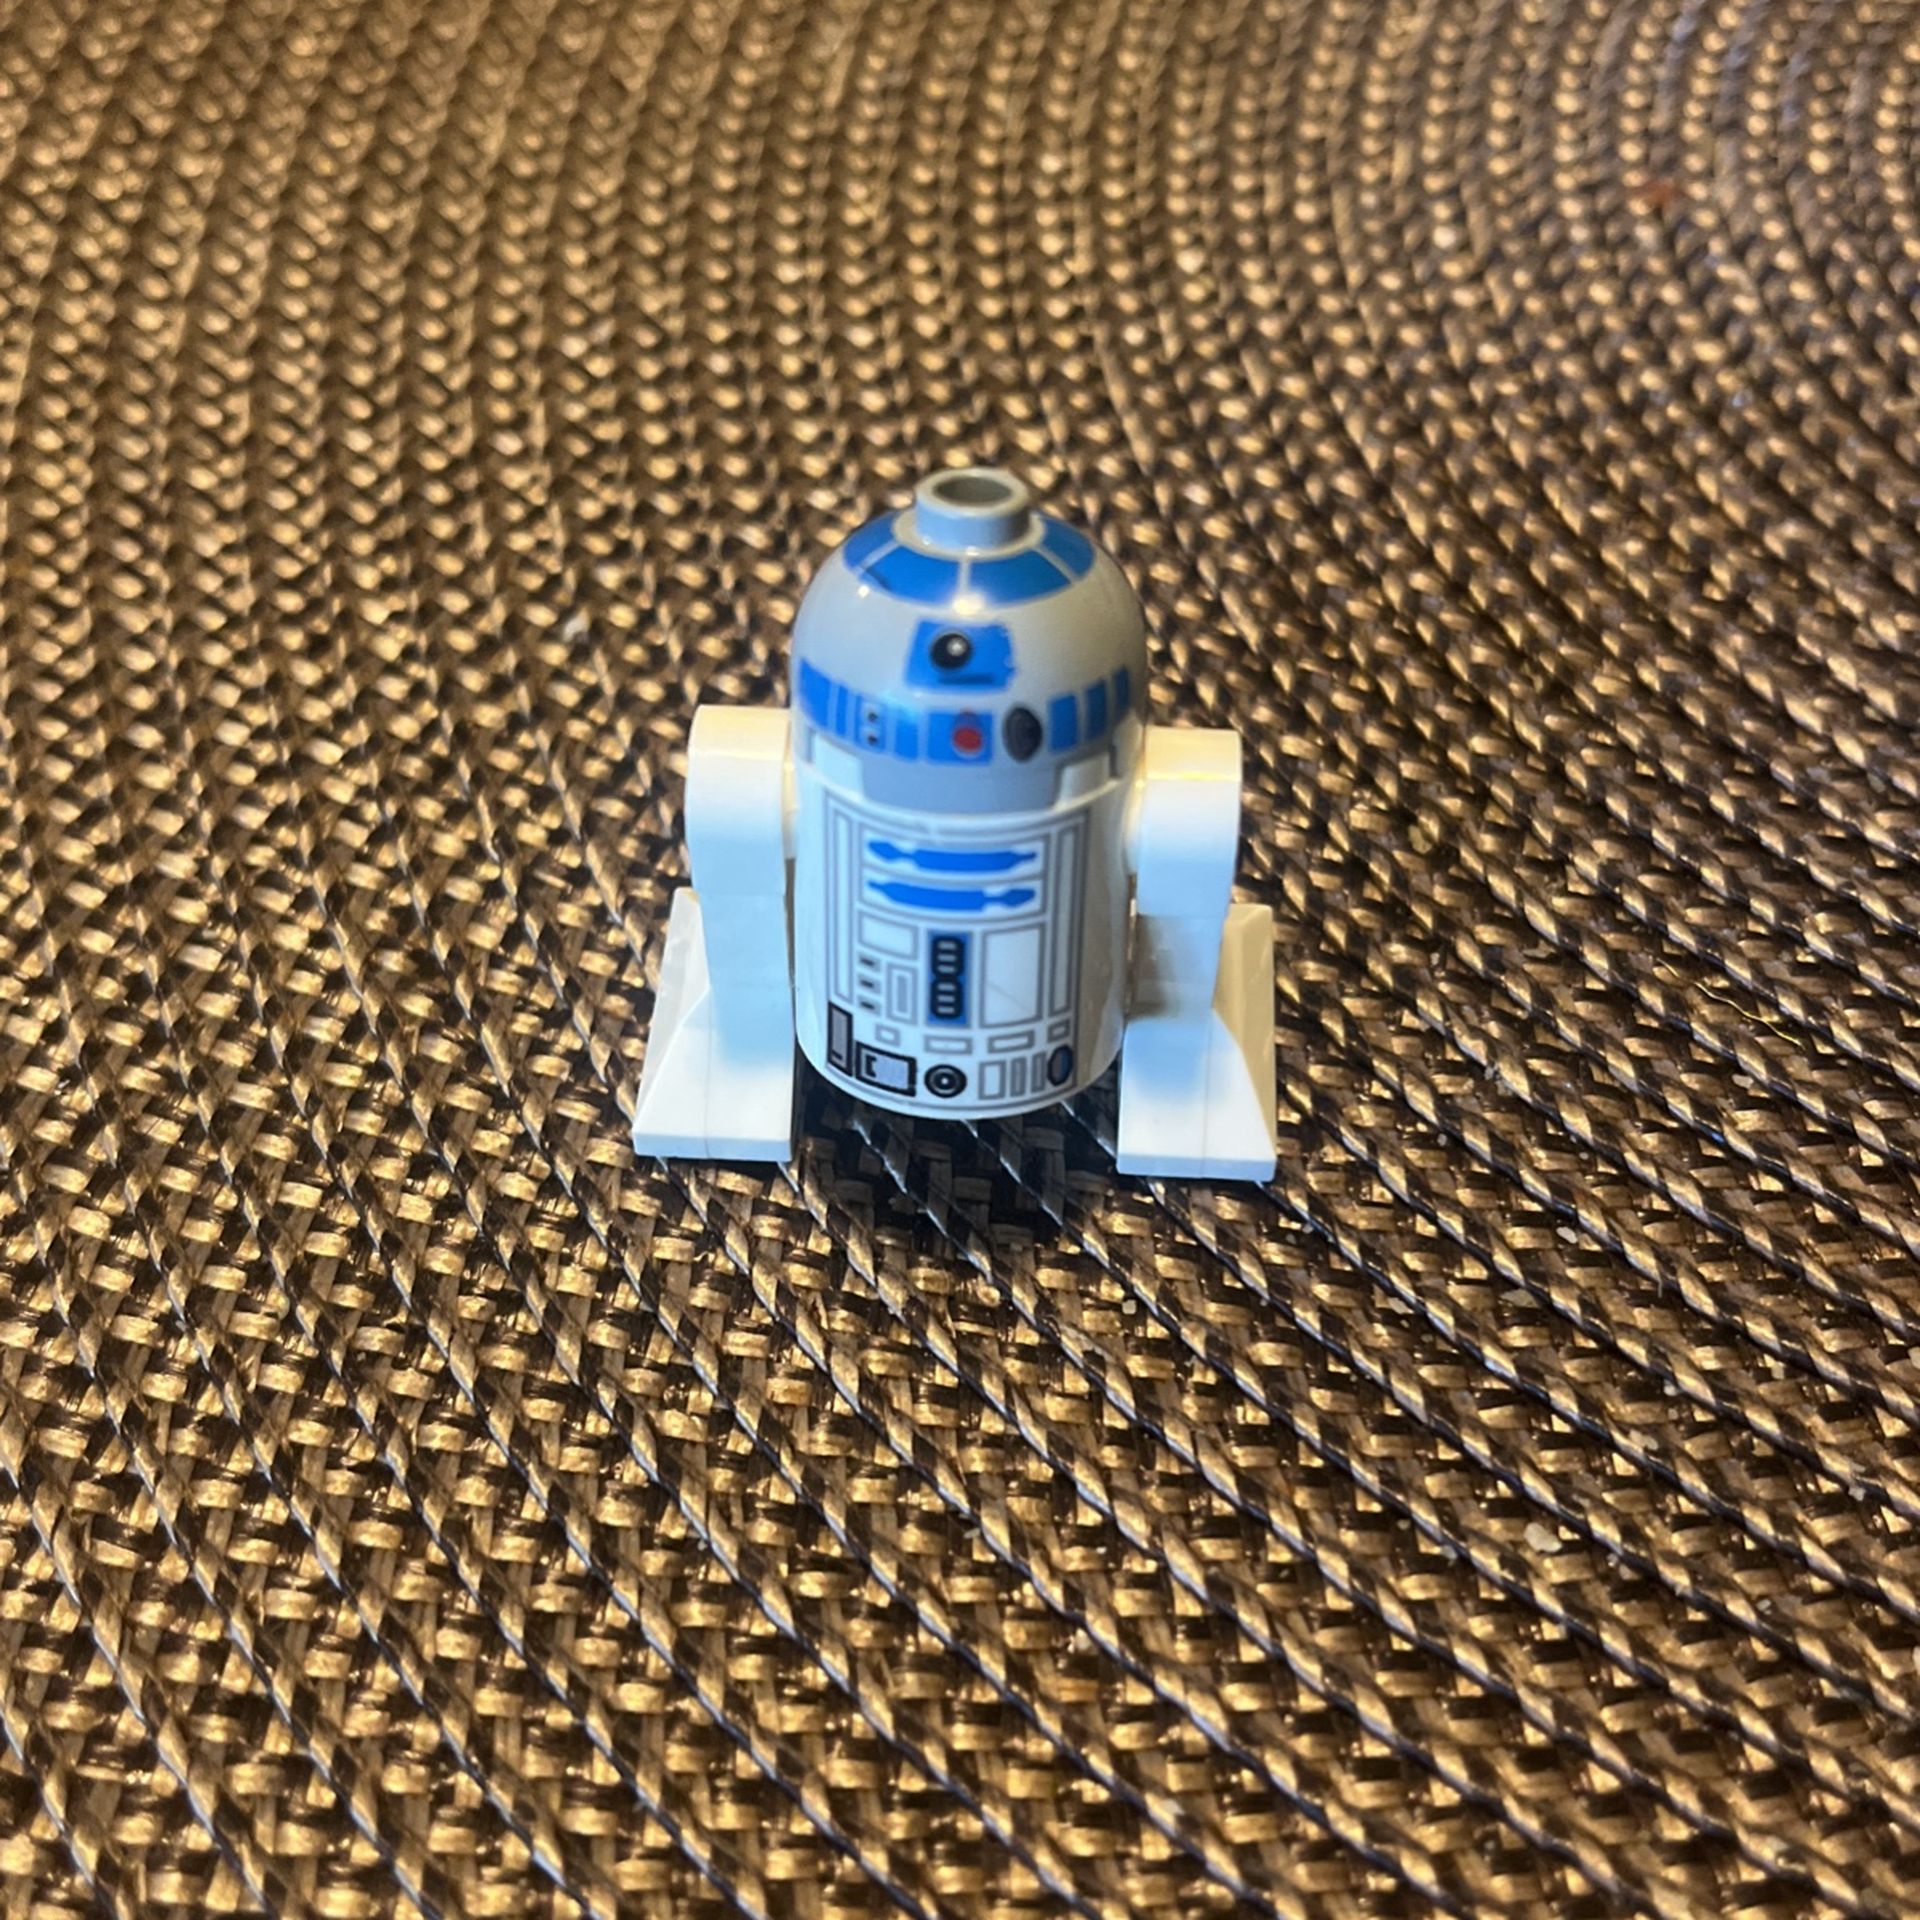 2013 R2-D2 Lego Figure